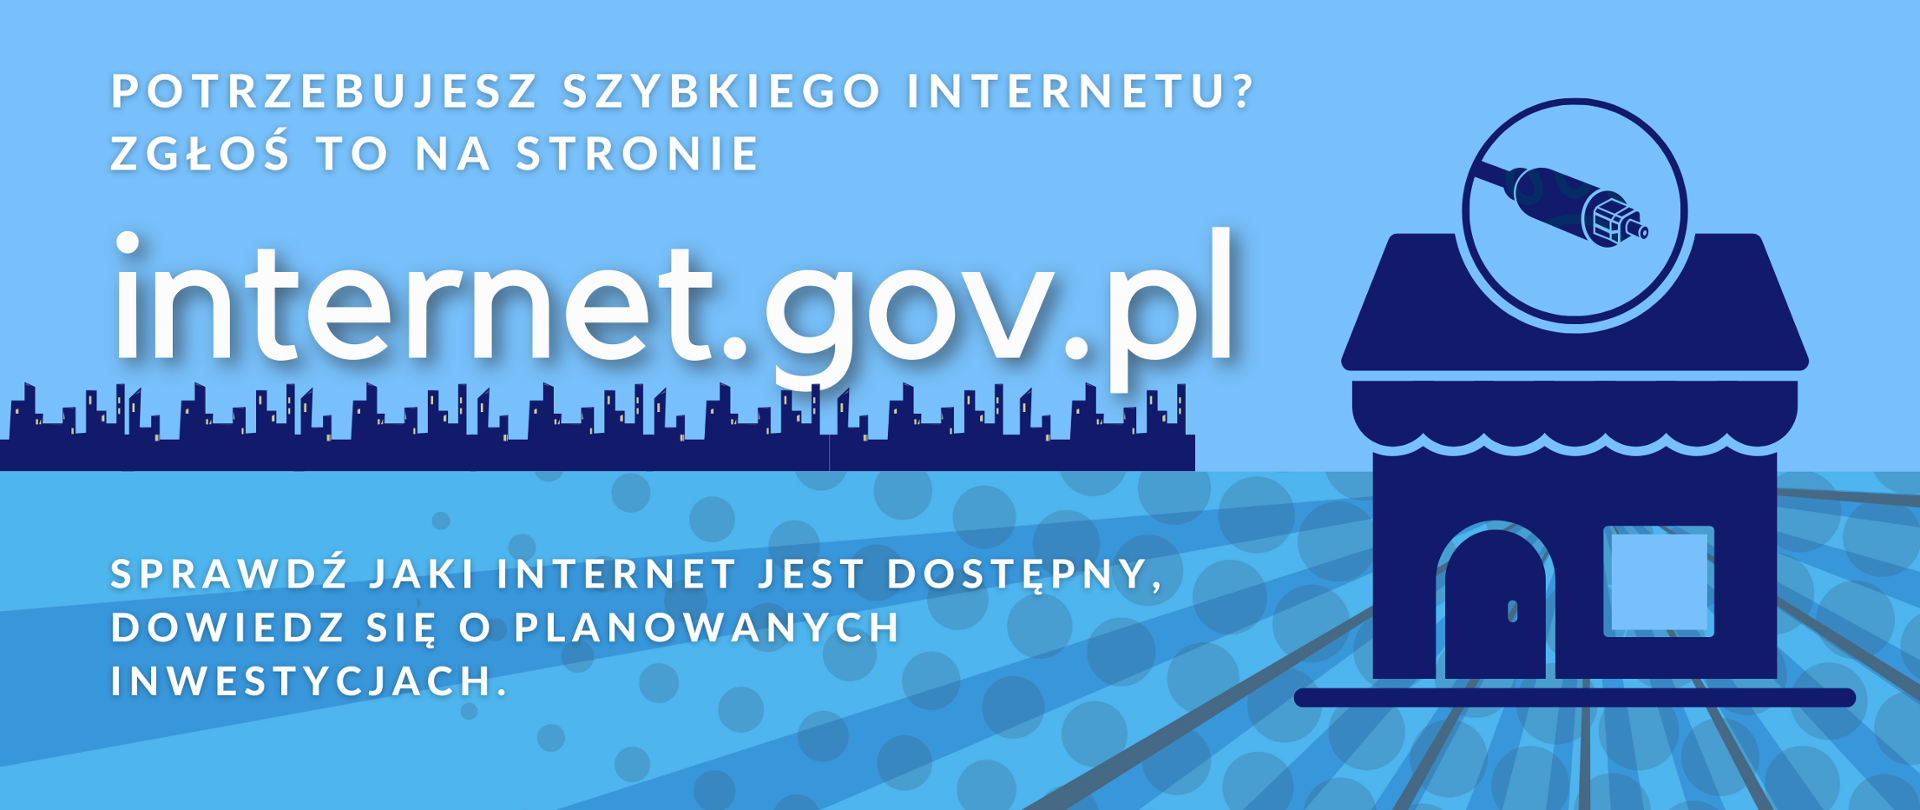 INTERNET.GOV.PL